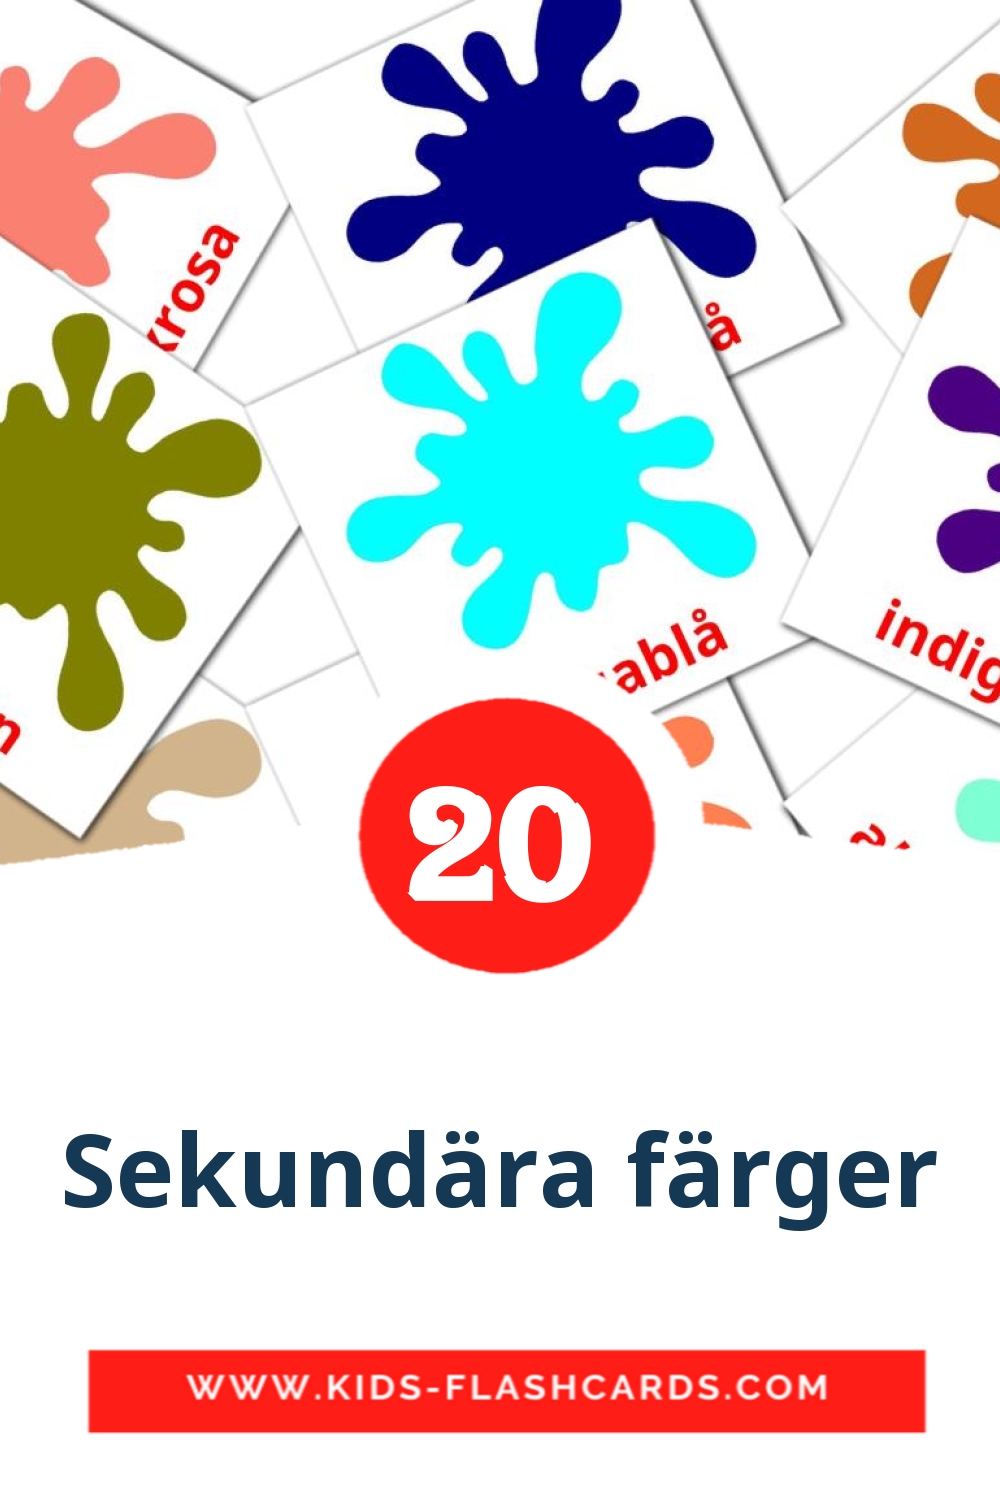 20 tarjetas didacticas de Sekundära färger para el jardín de infancia en sueco